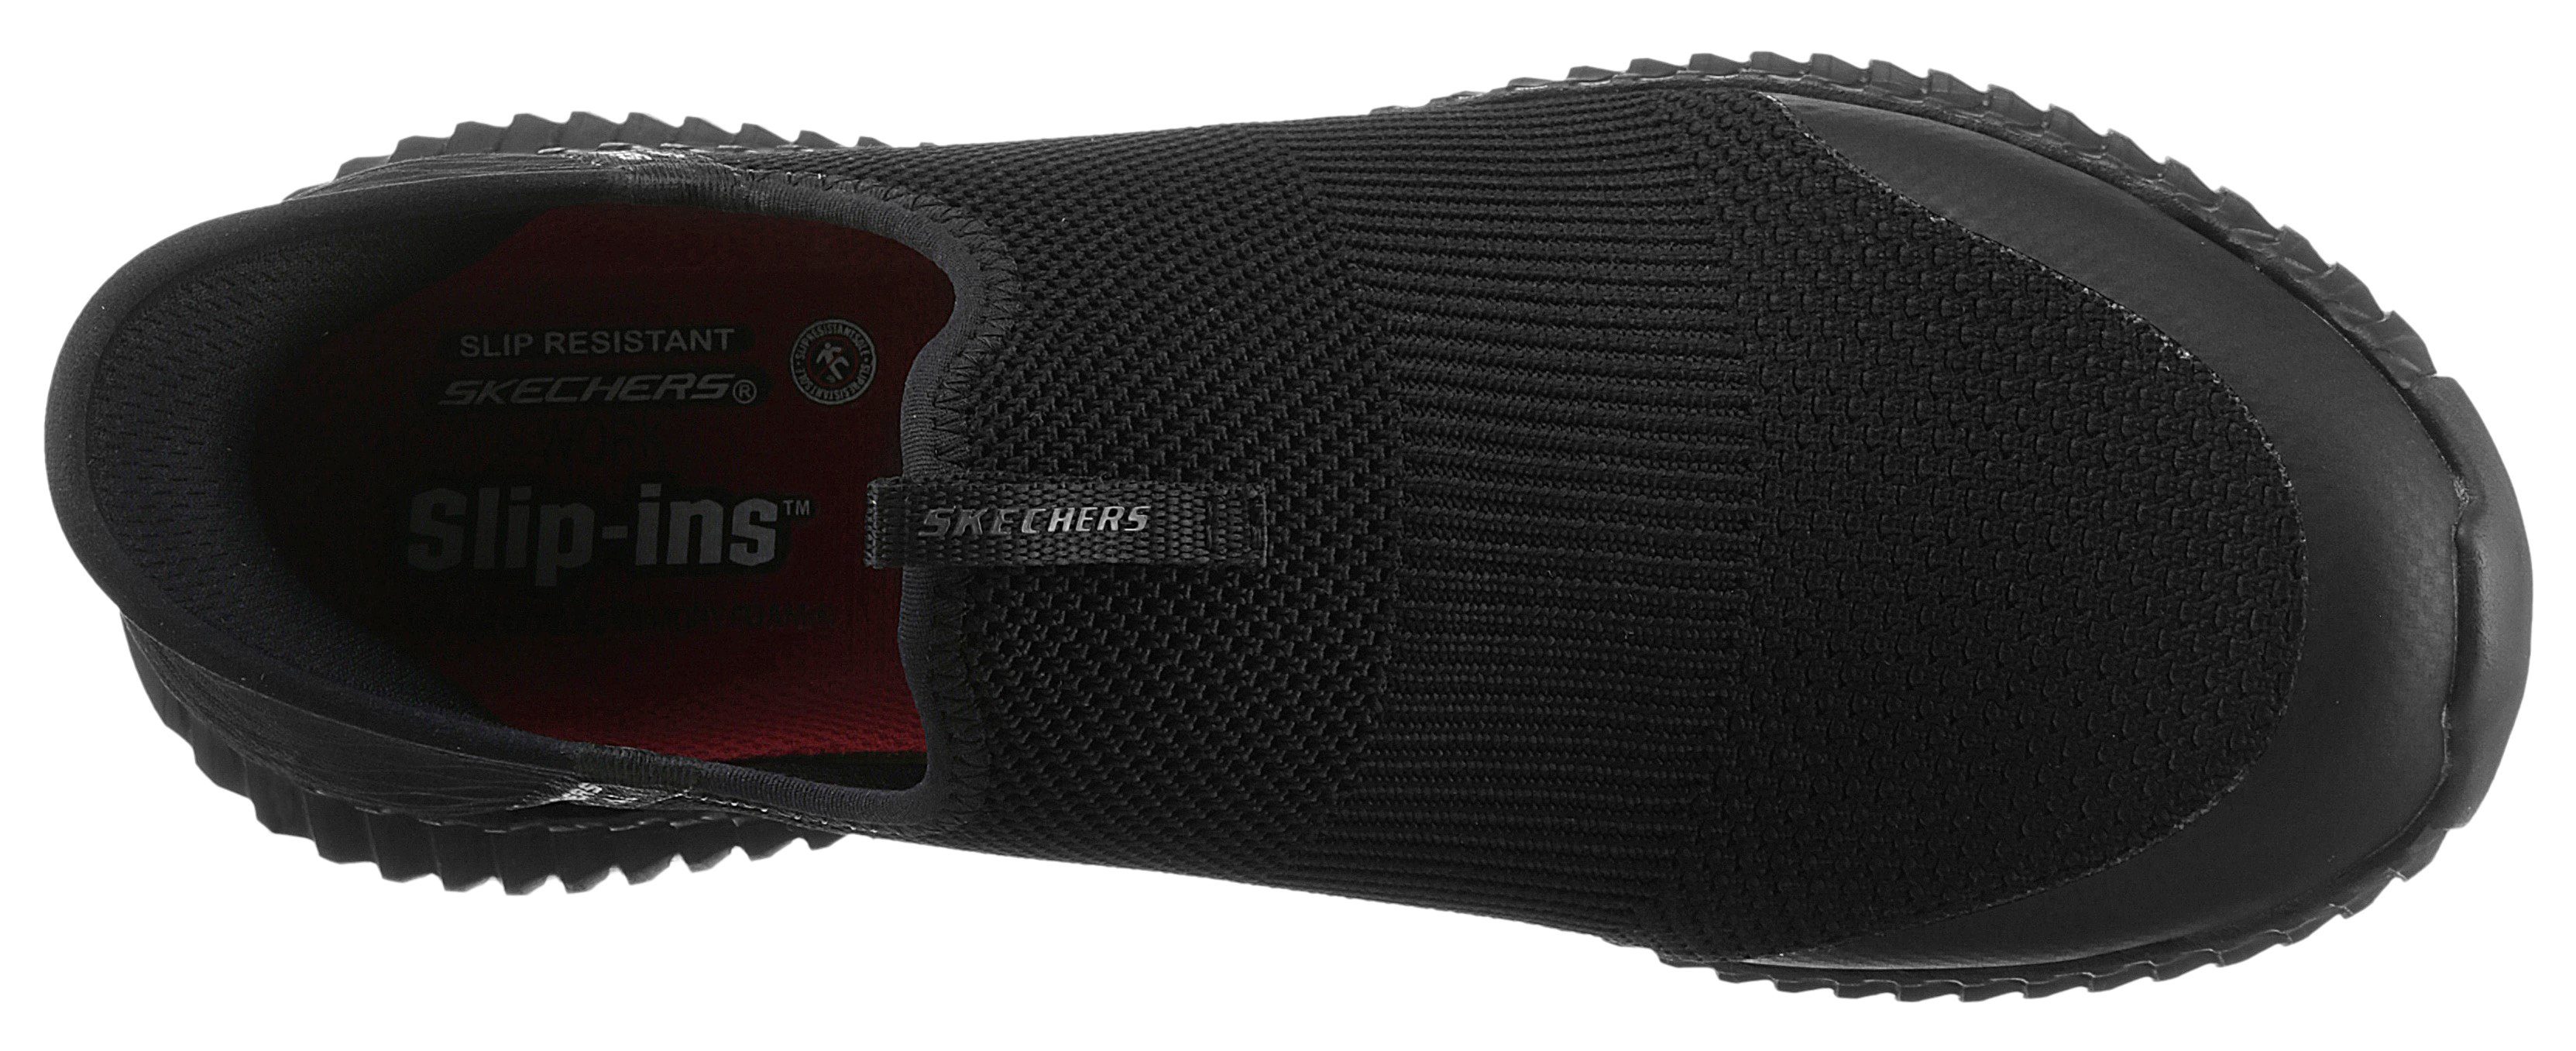 Skechers CESSNOCK - komfortabler GWYNEDD mit Berufsschuh Slip-Ins-Funktion